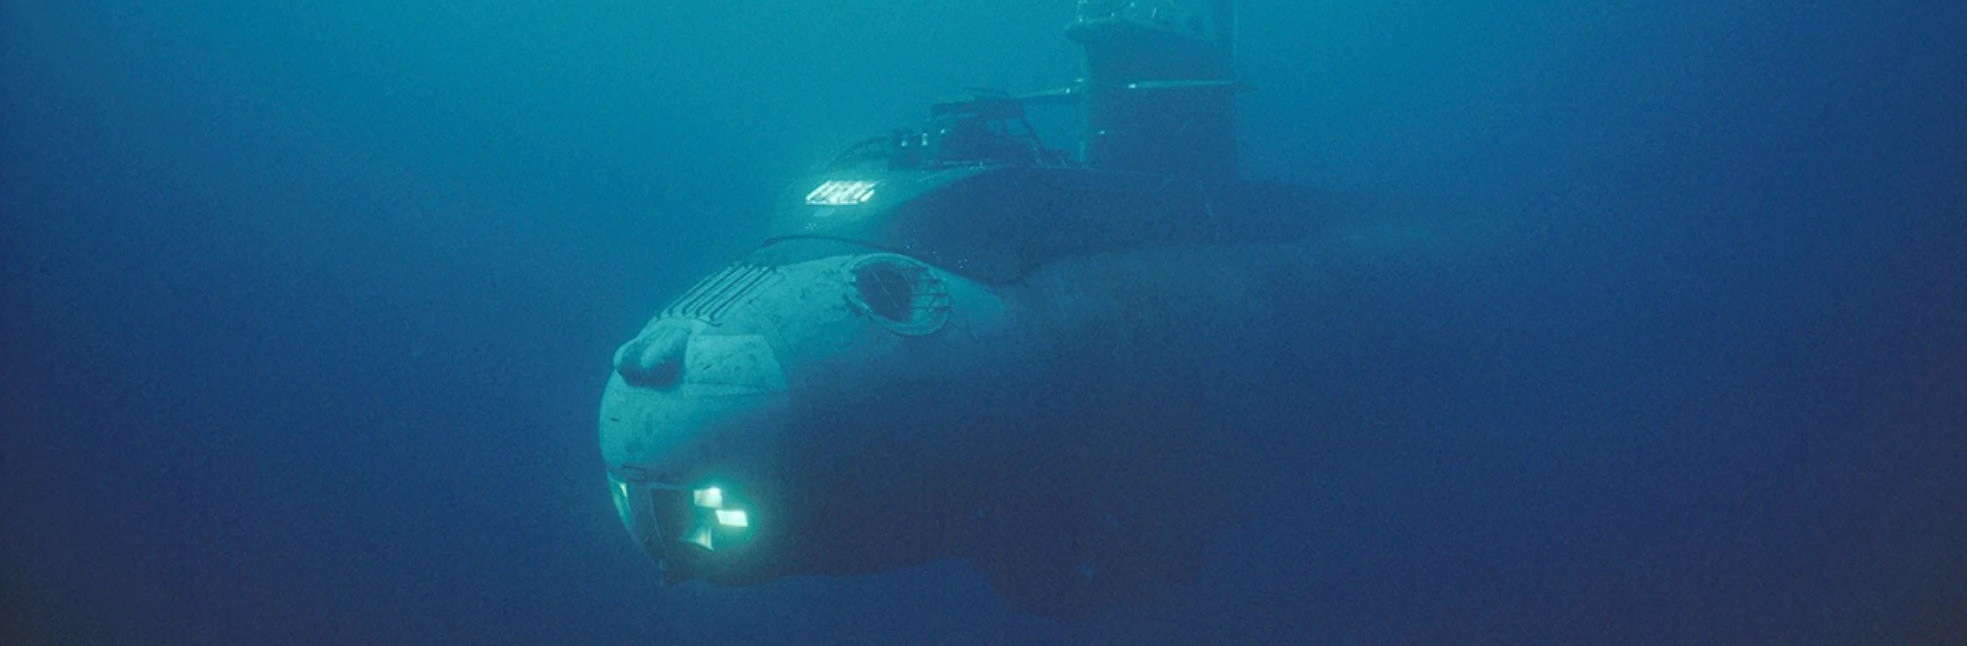 «Σύγκρουση» υποβρυχίων Type 214 στο βυθό του Αιγαίου: Ολοκληρώθηκε η ναυπήγηση του πρώτου τουρκικού υποβρυχίου Type 214T